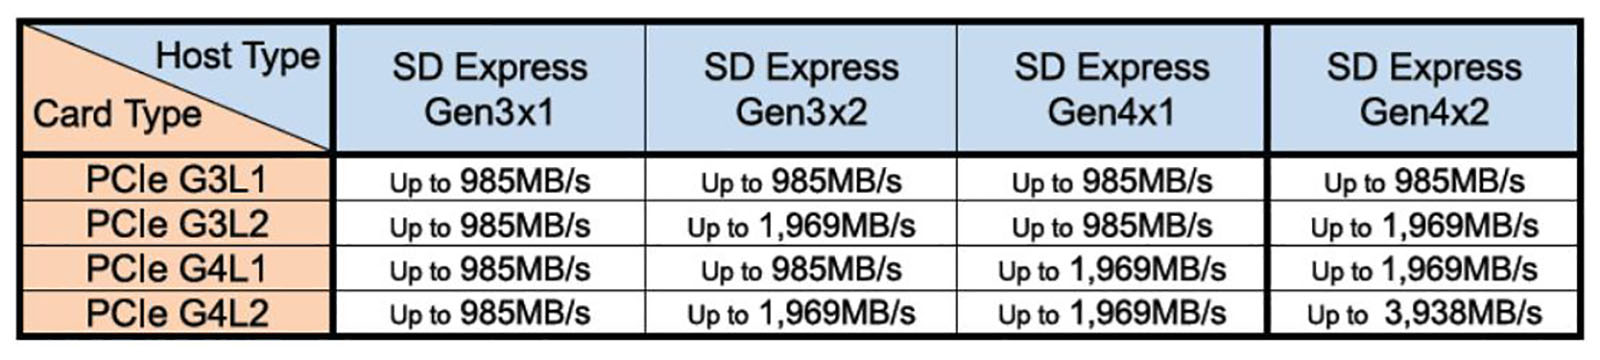 SD Express 8.0